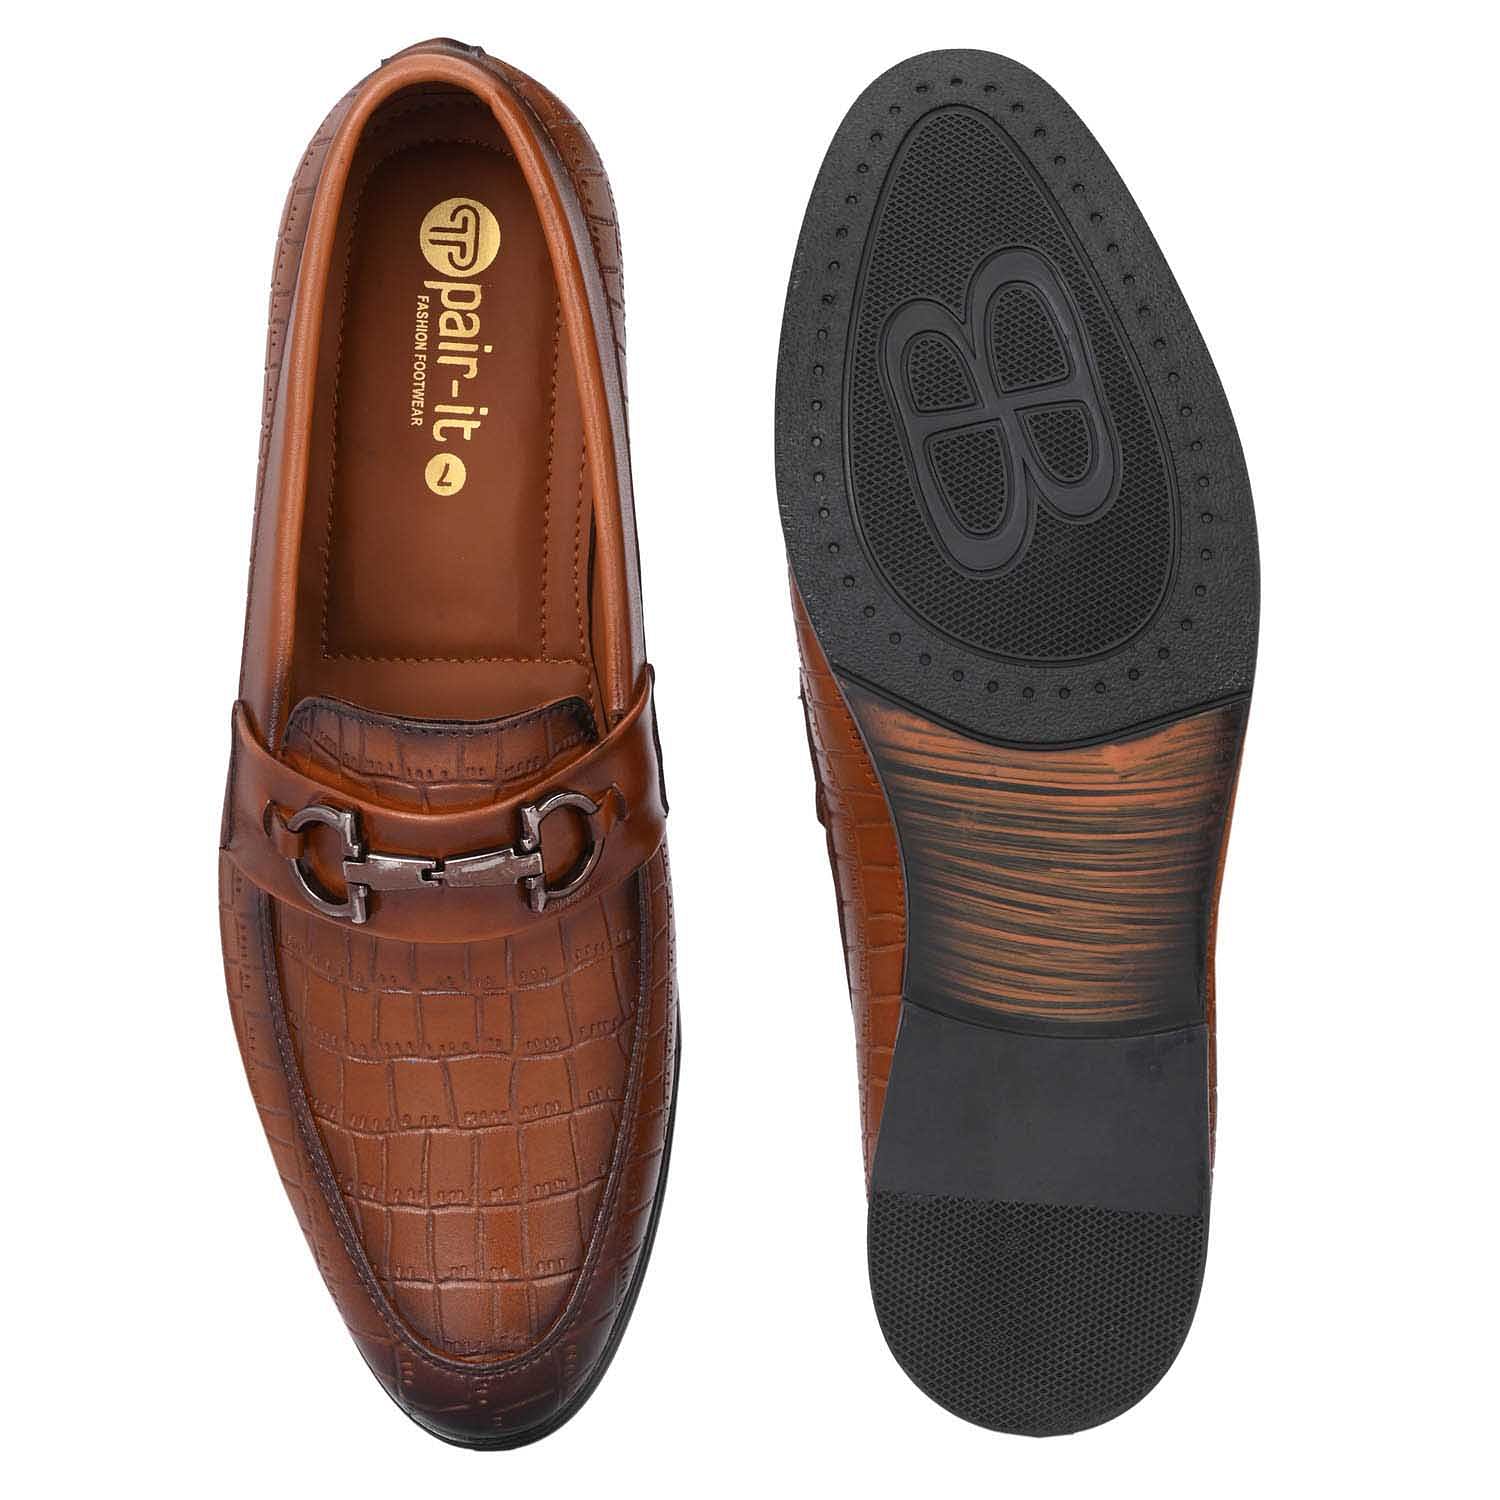 Pair-it Men's Formal Shoes - KF-T-Formal 117 - Tan